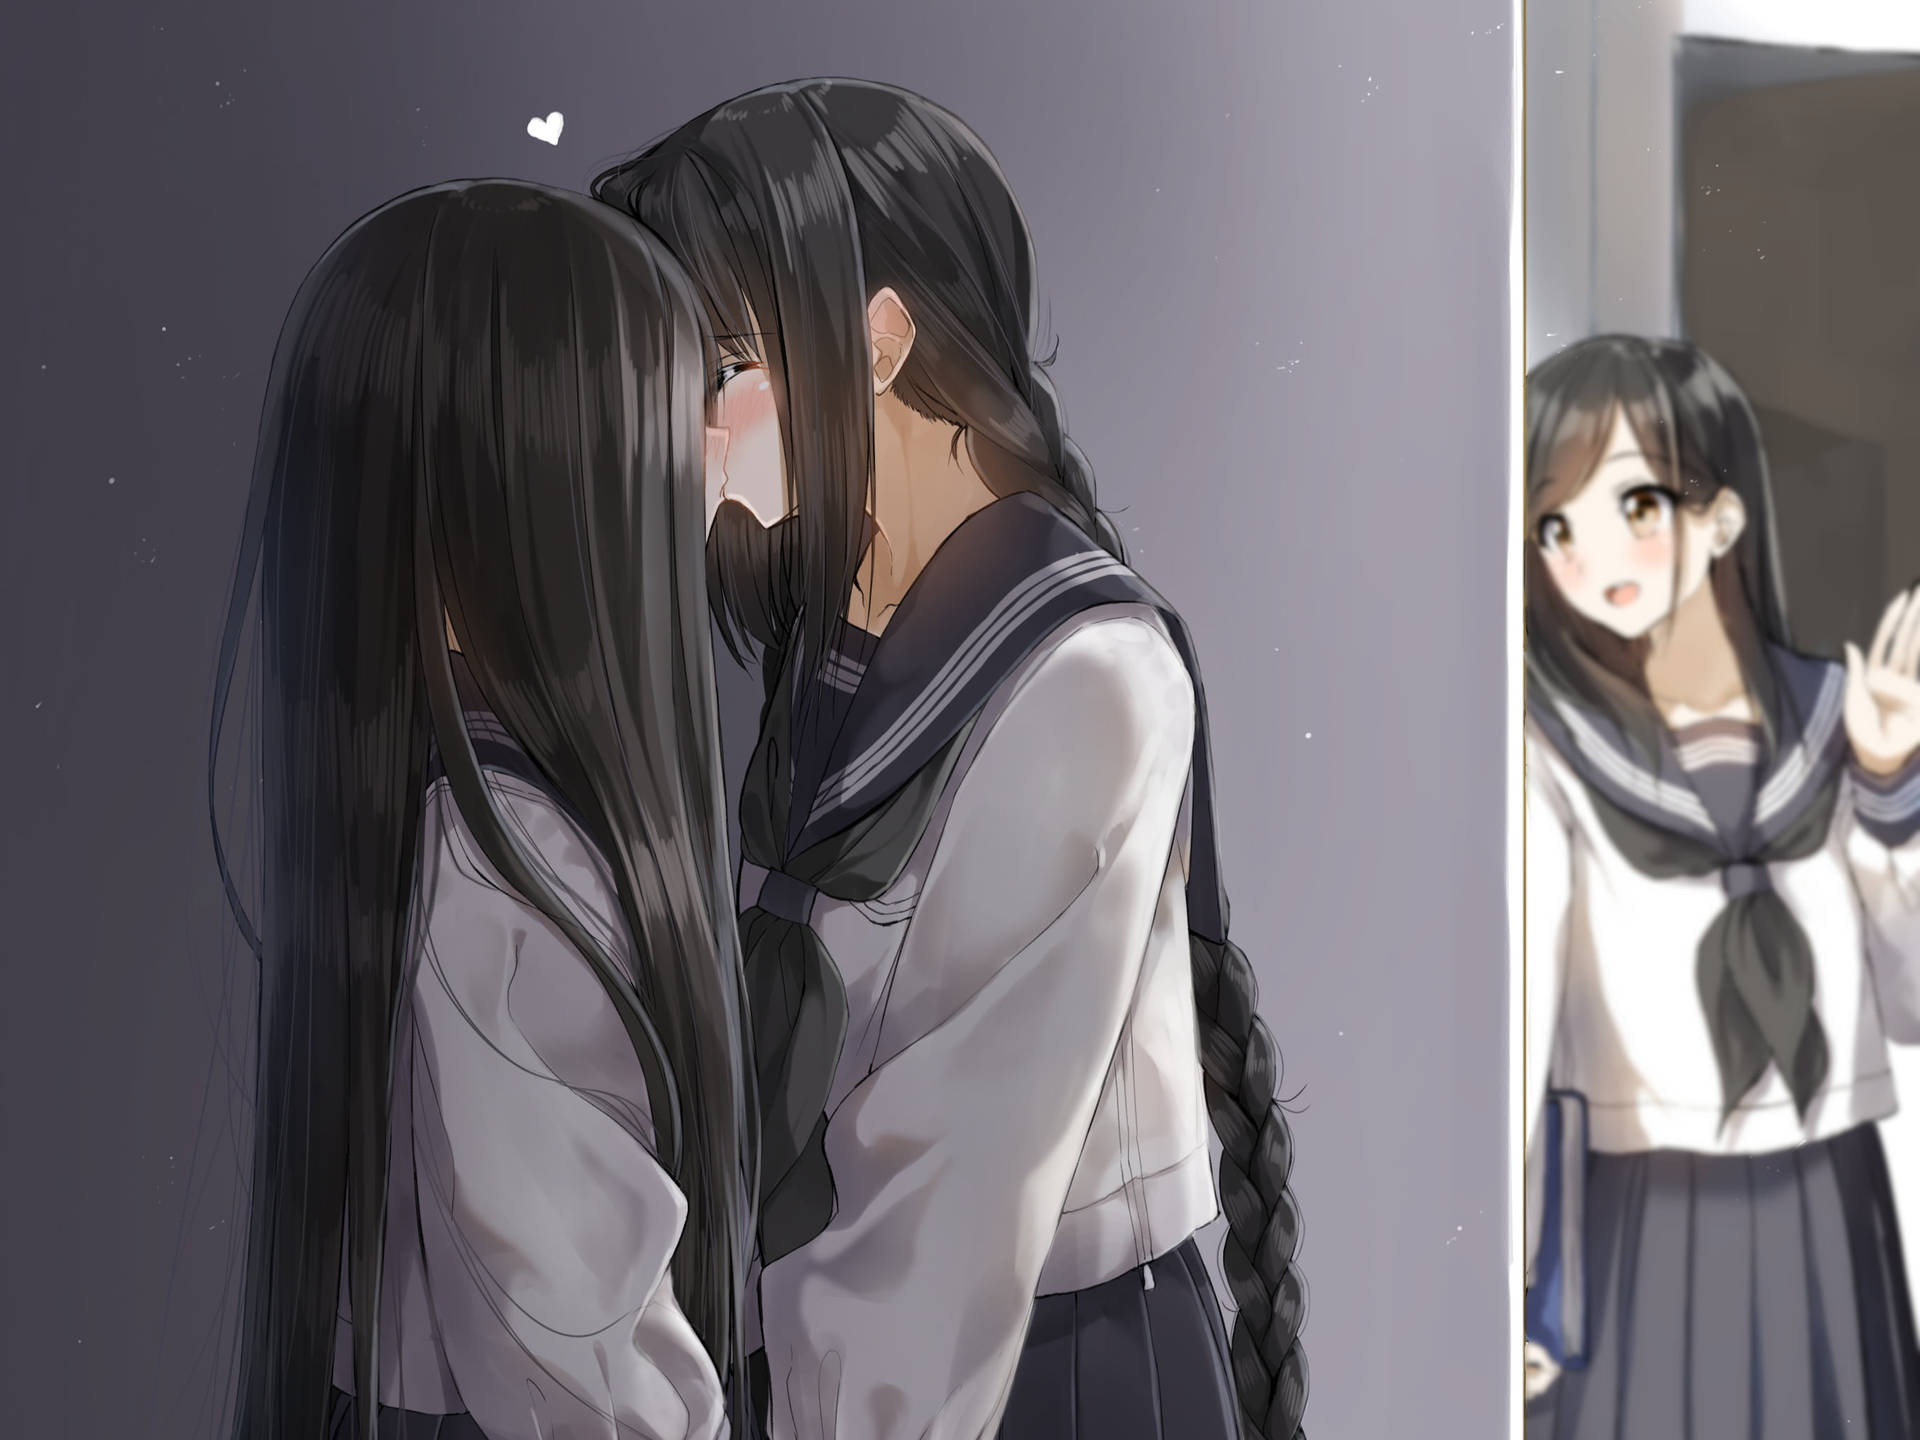 100+] Anime Couple Kiss Wallpapers